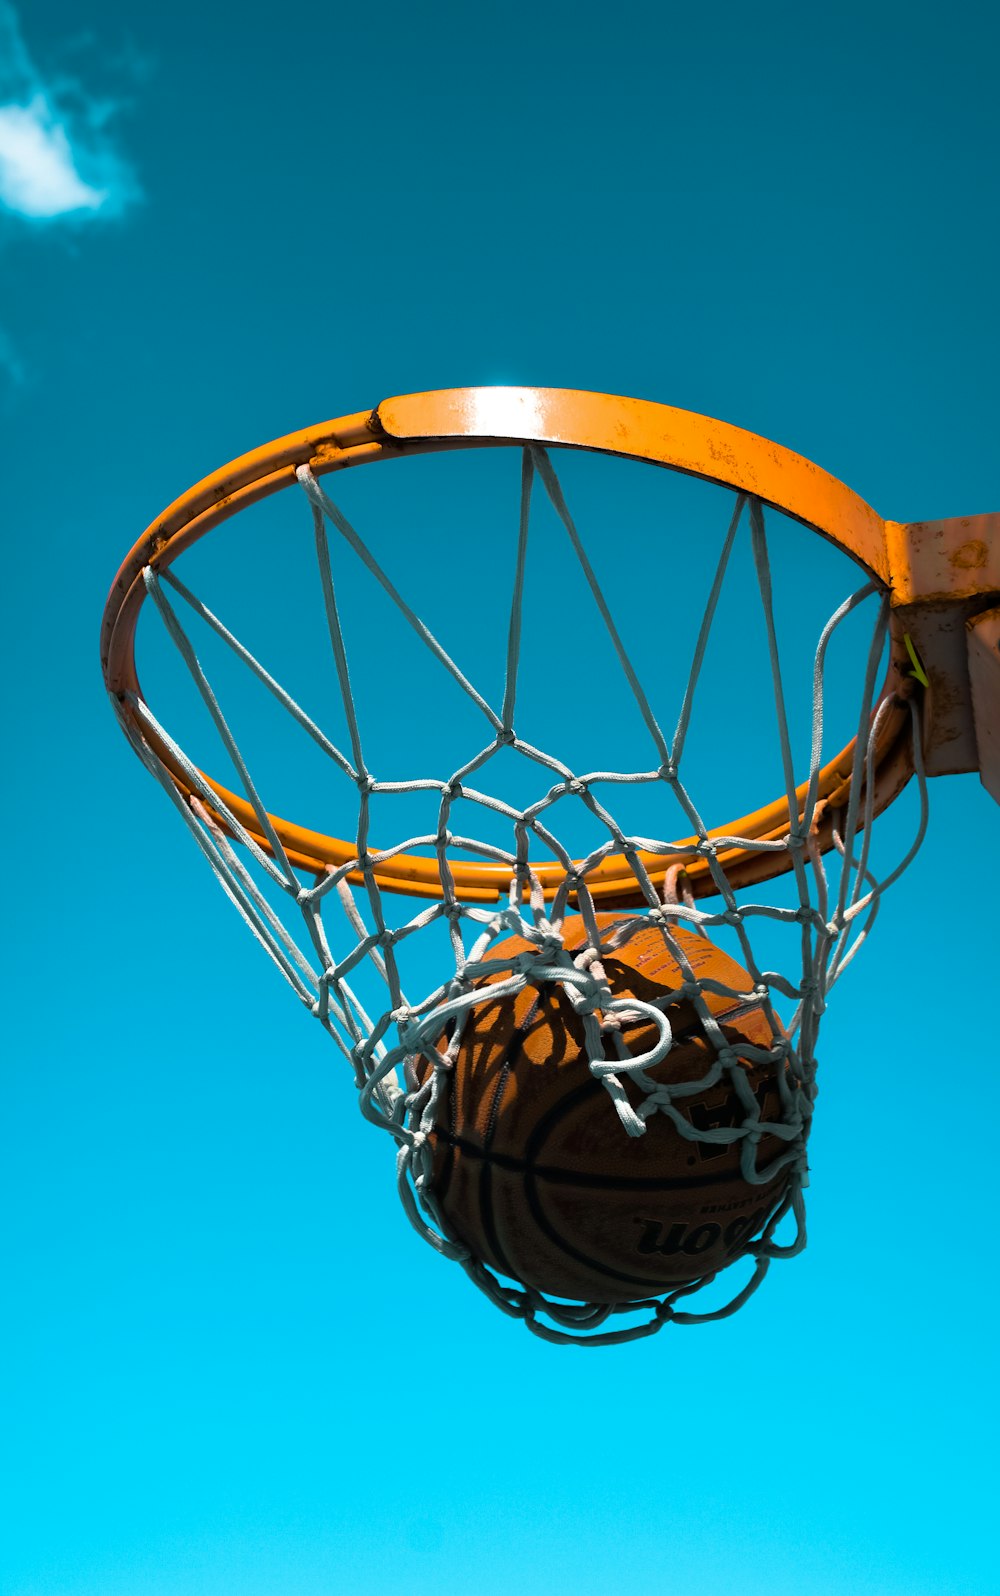 basquete no aro com rede